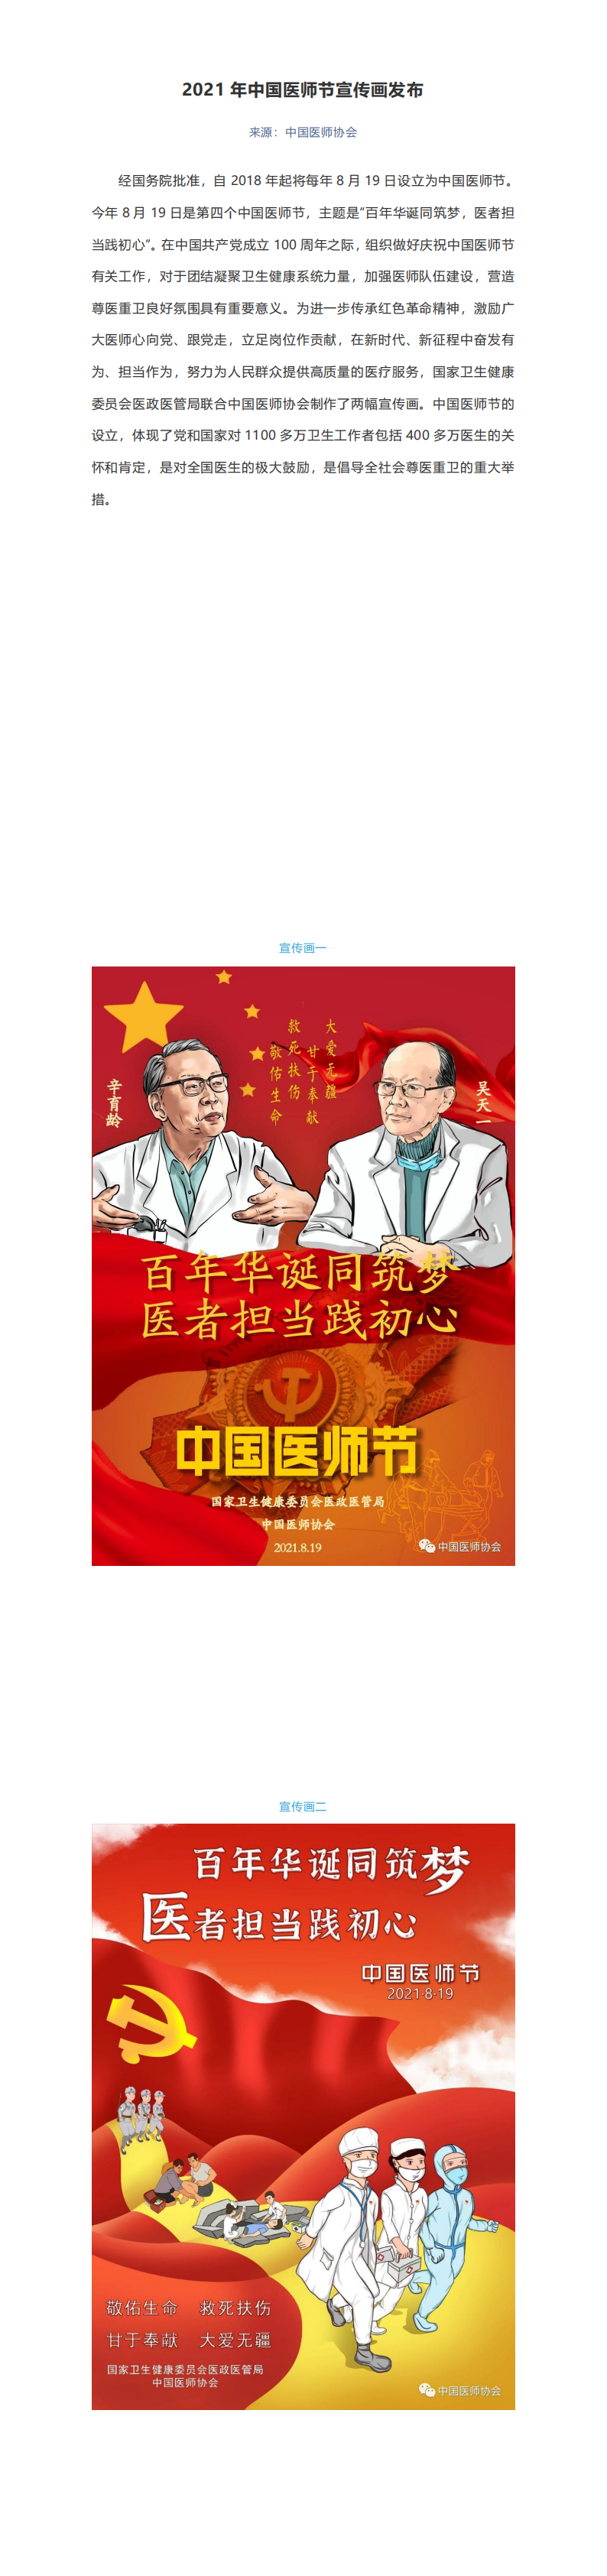 附件1 2021年中国医师节宣传画发布_00.png